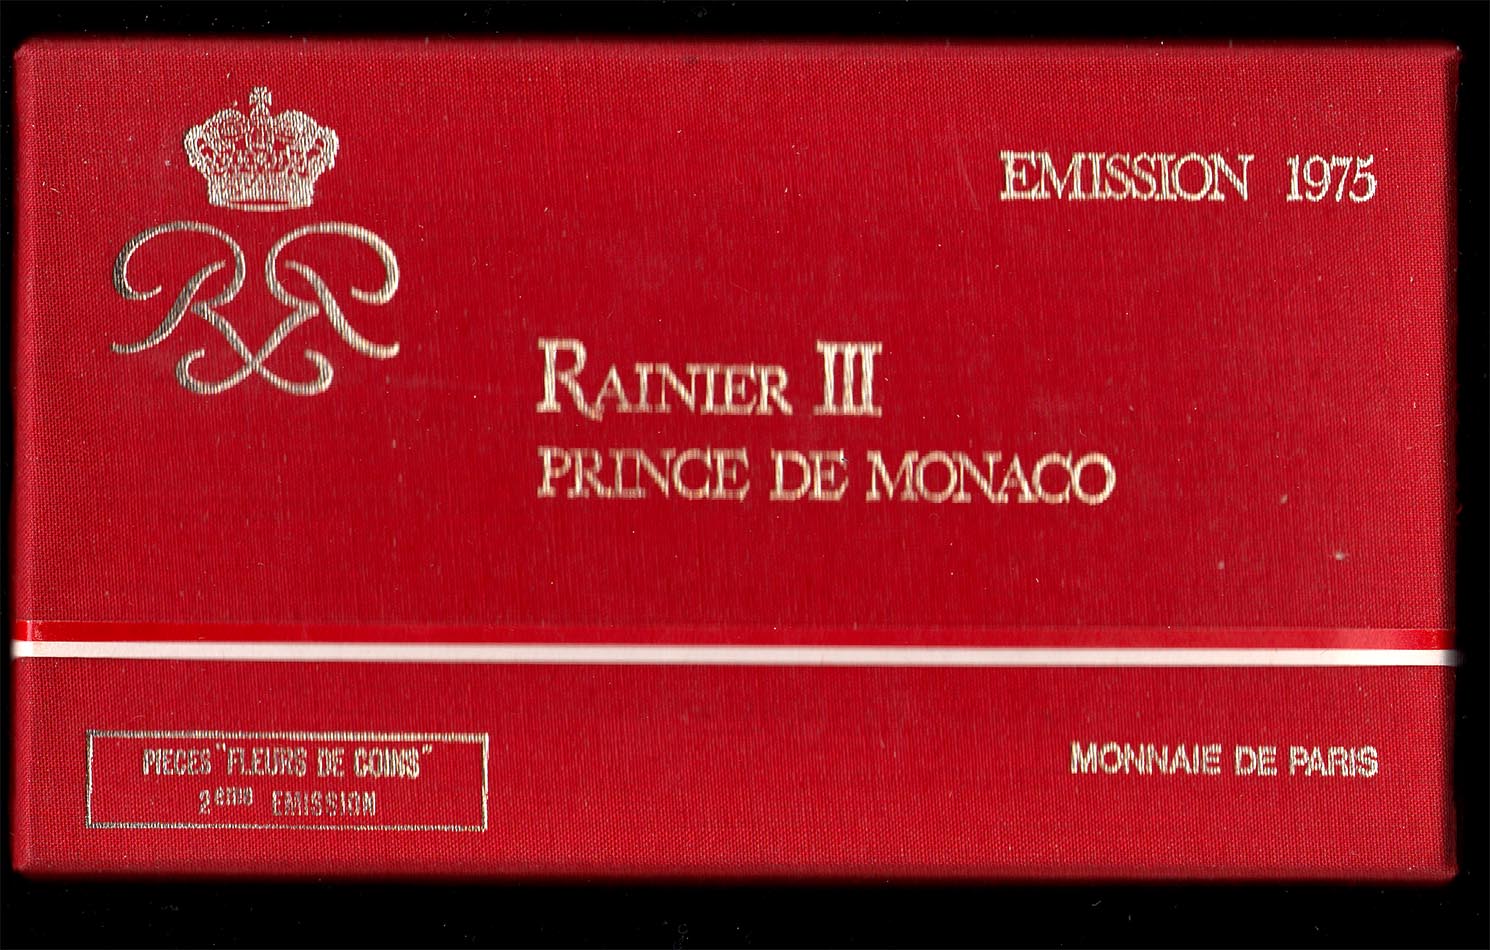 Principato di Monaco 1975 set completo ufficiale Ranieri III con argento